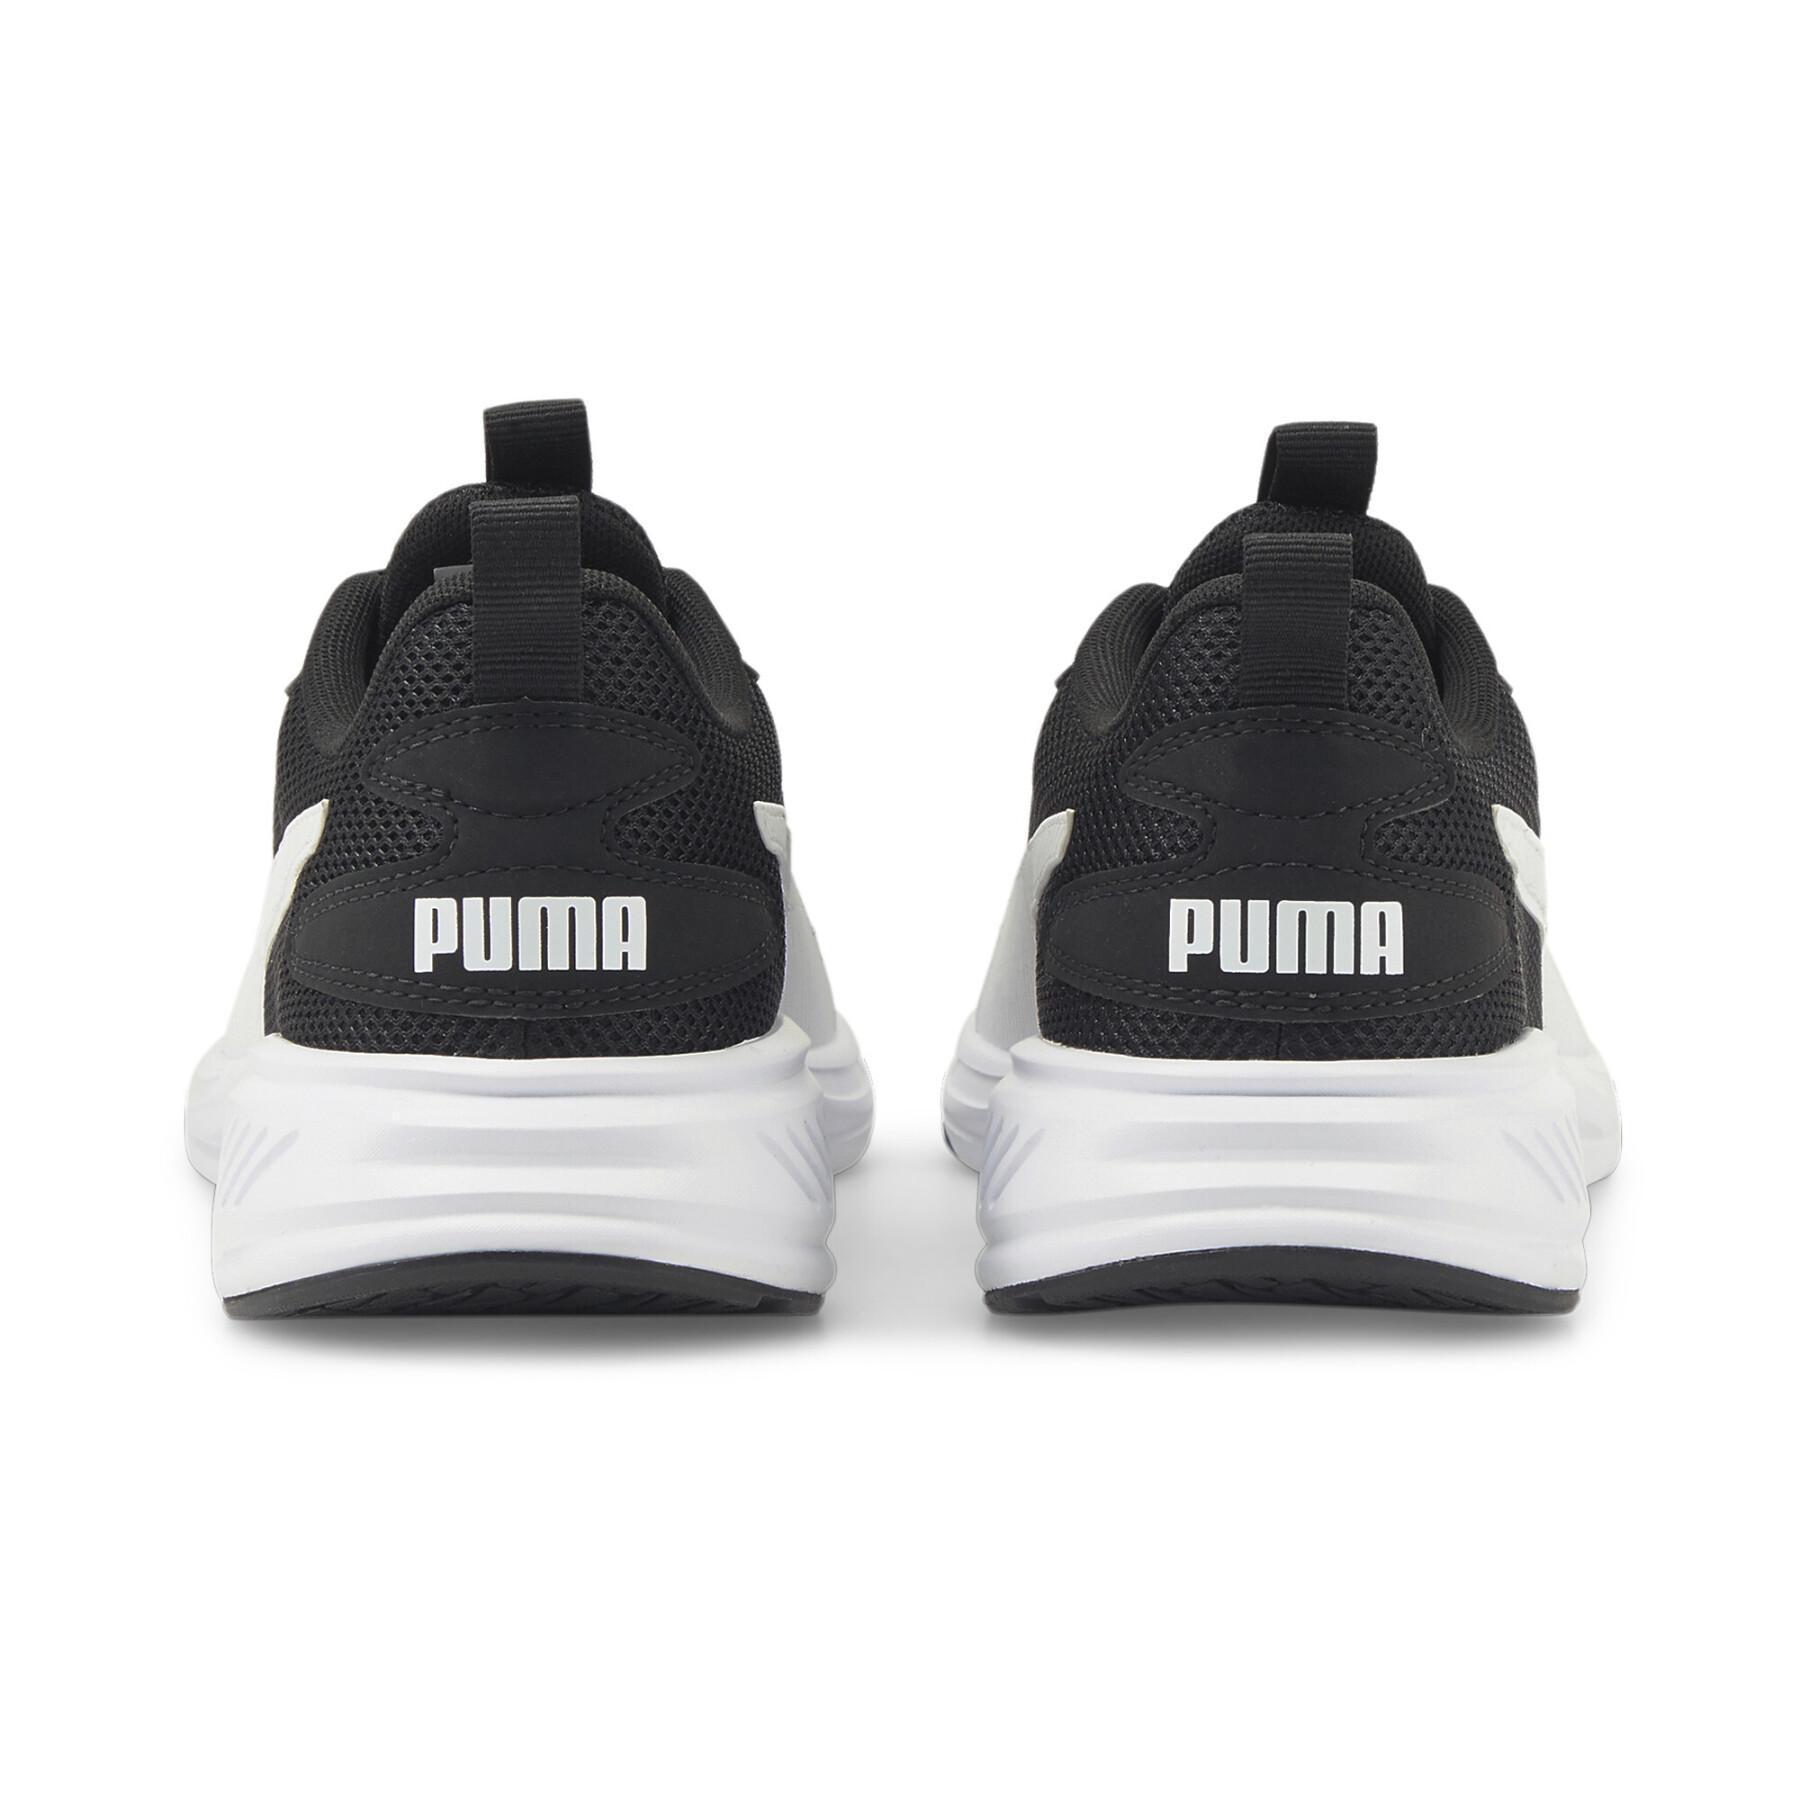 Sapatos Puma Incinerate